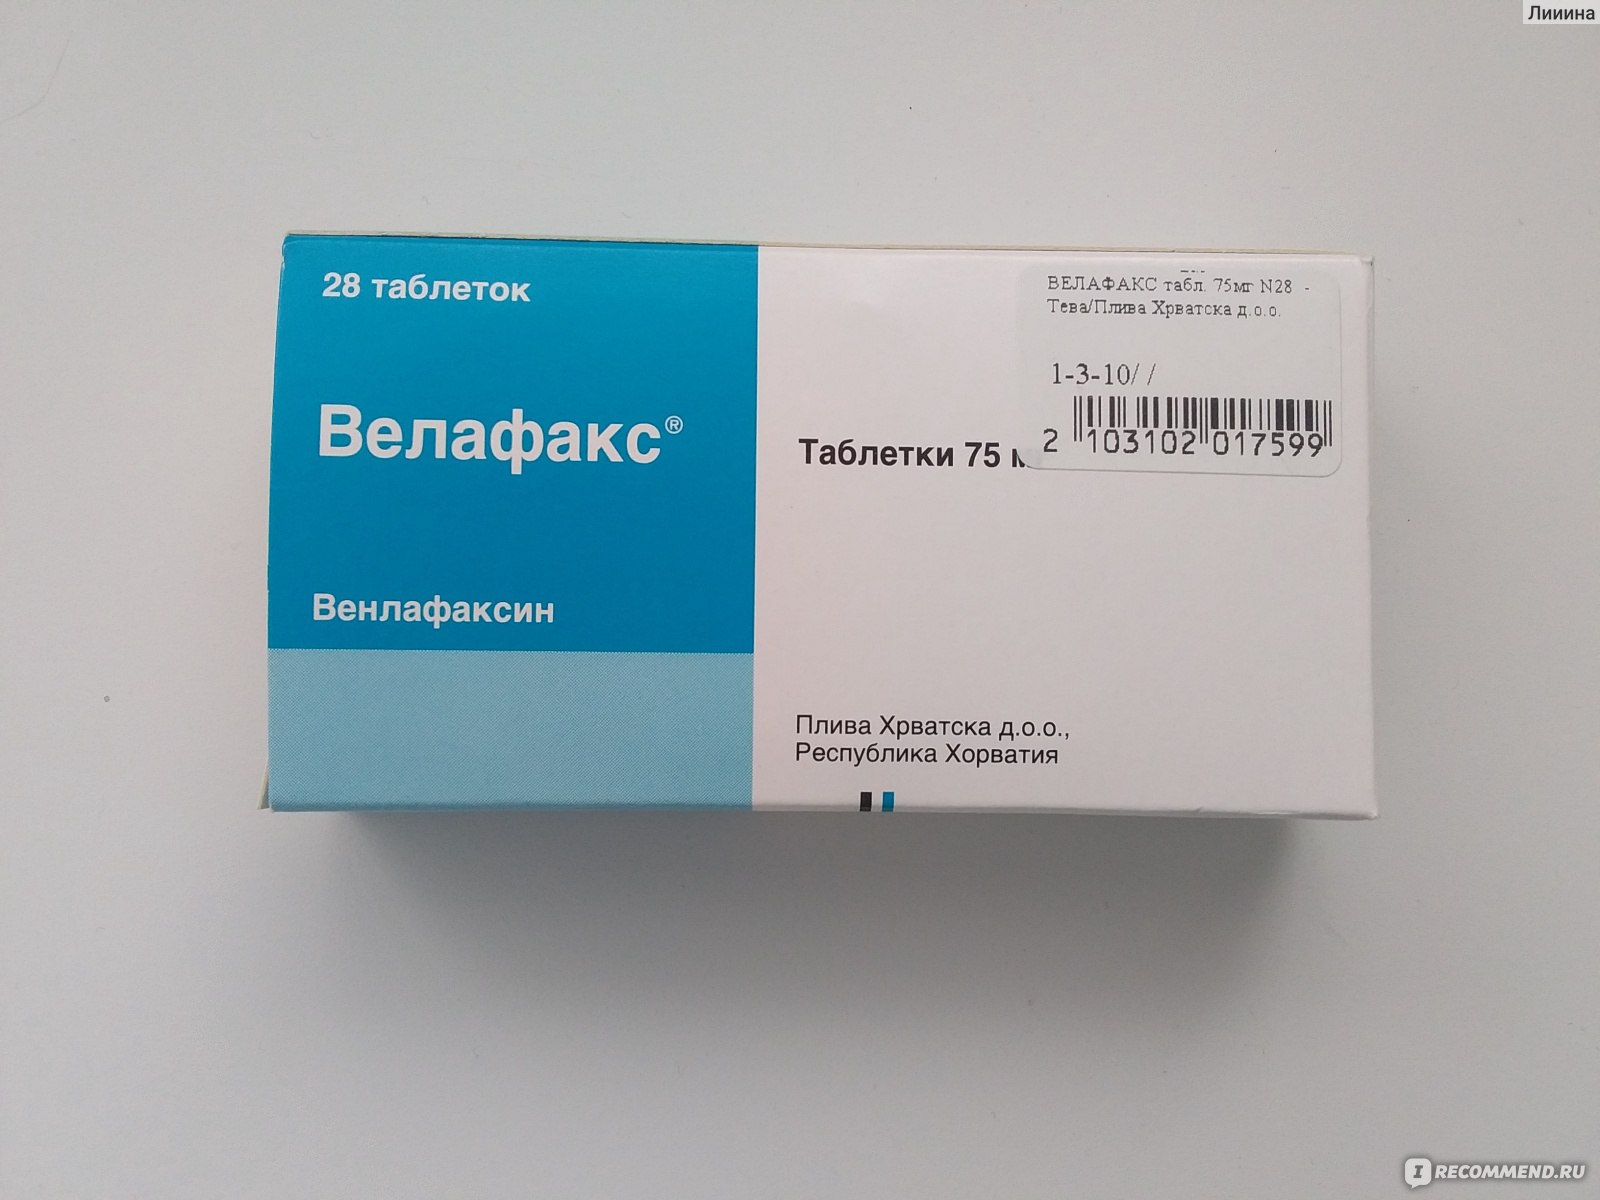 Венлафаксин как наркотик характеристика сортов конопли